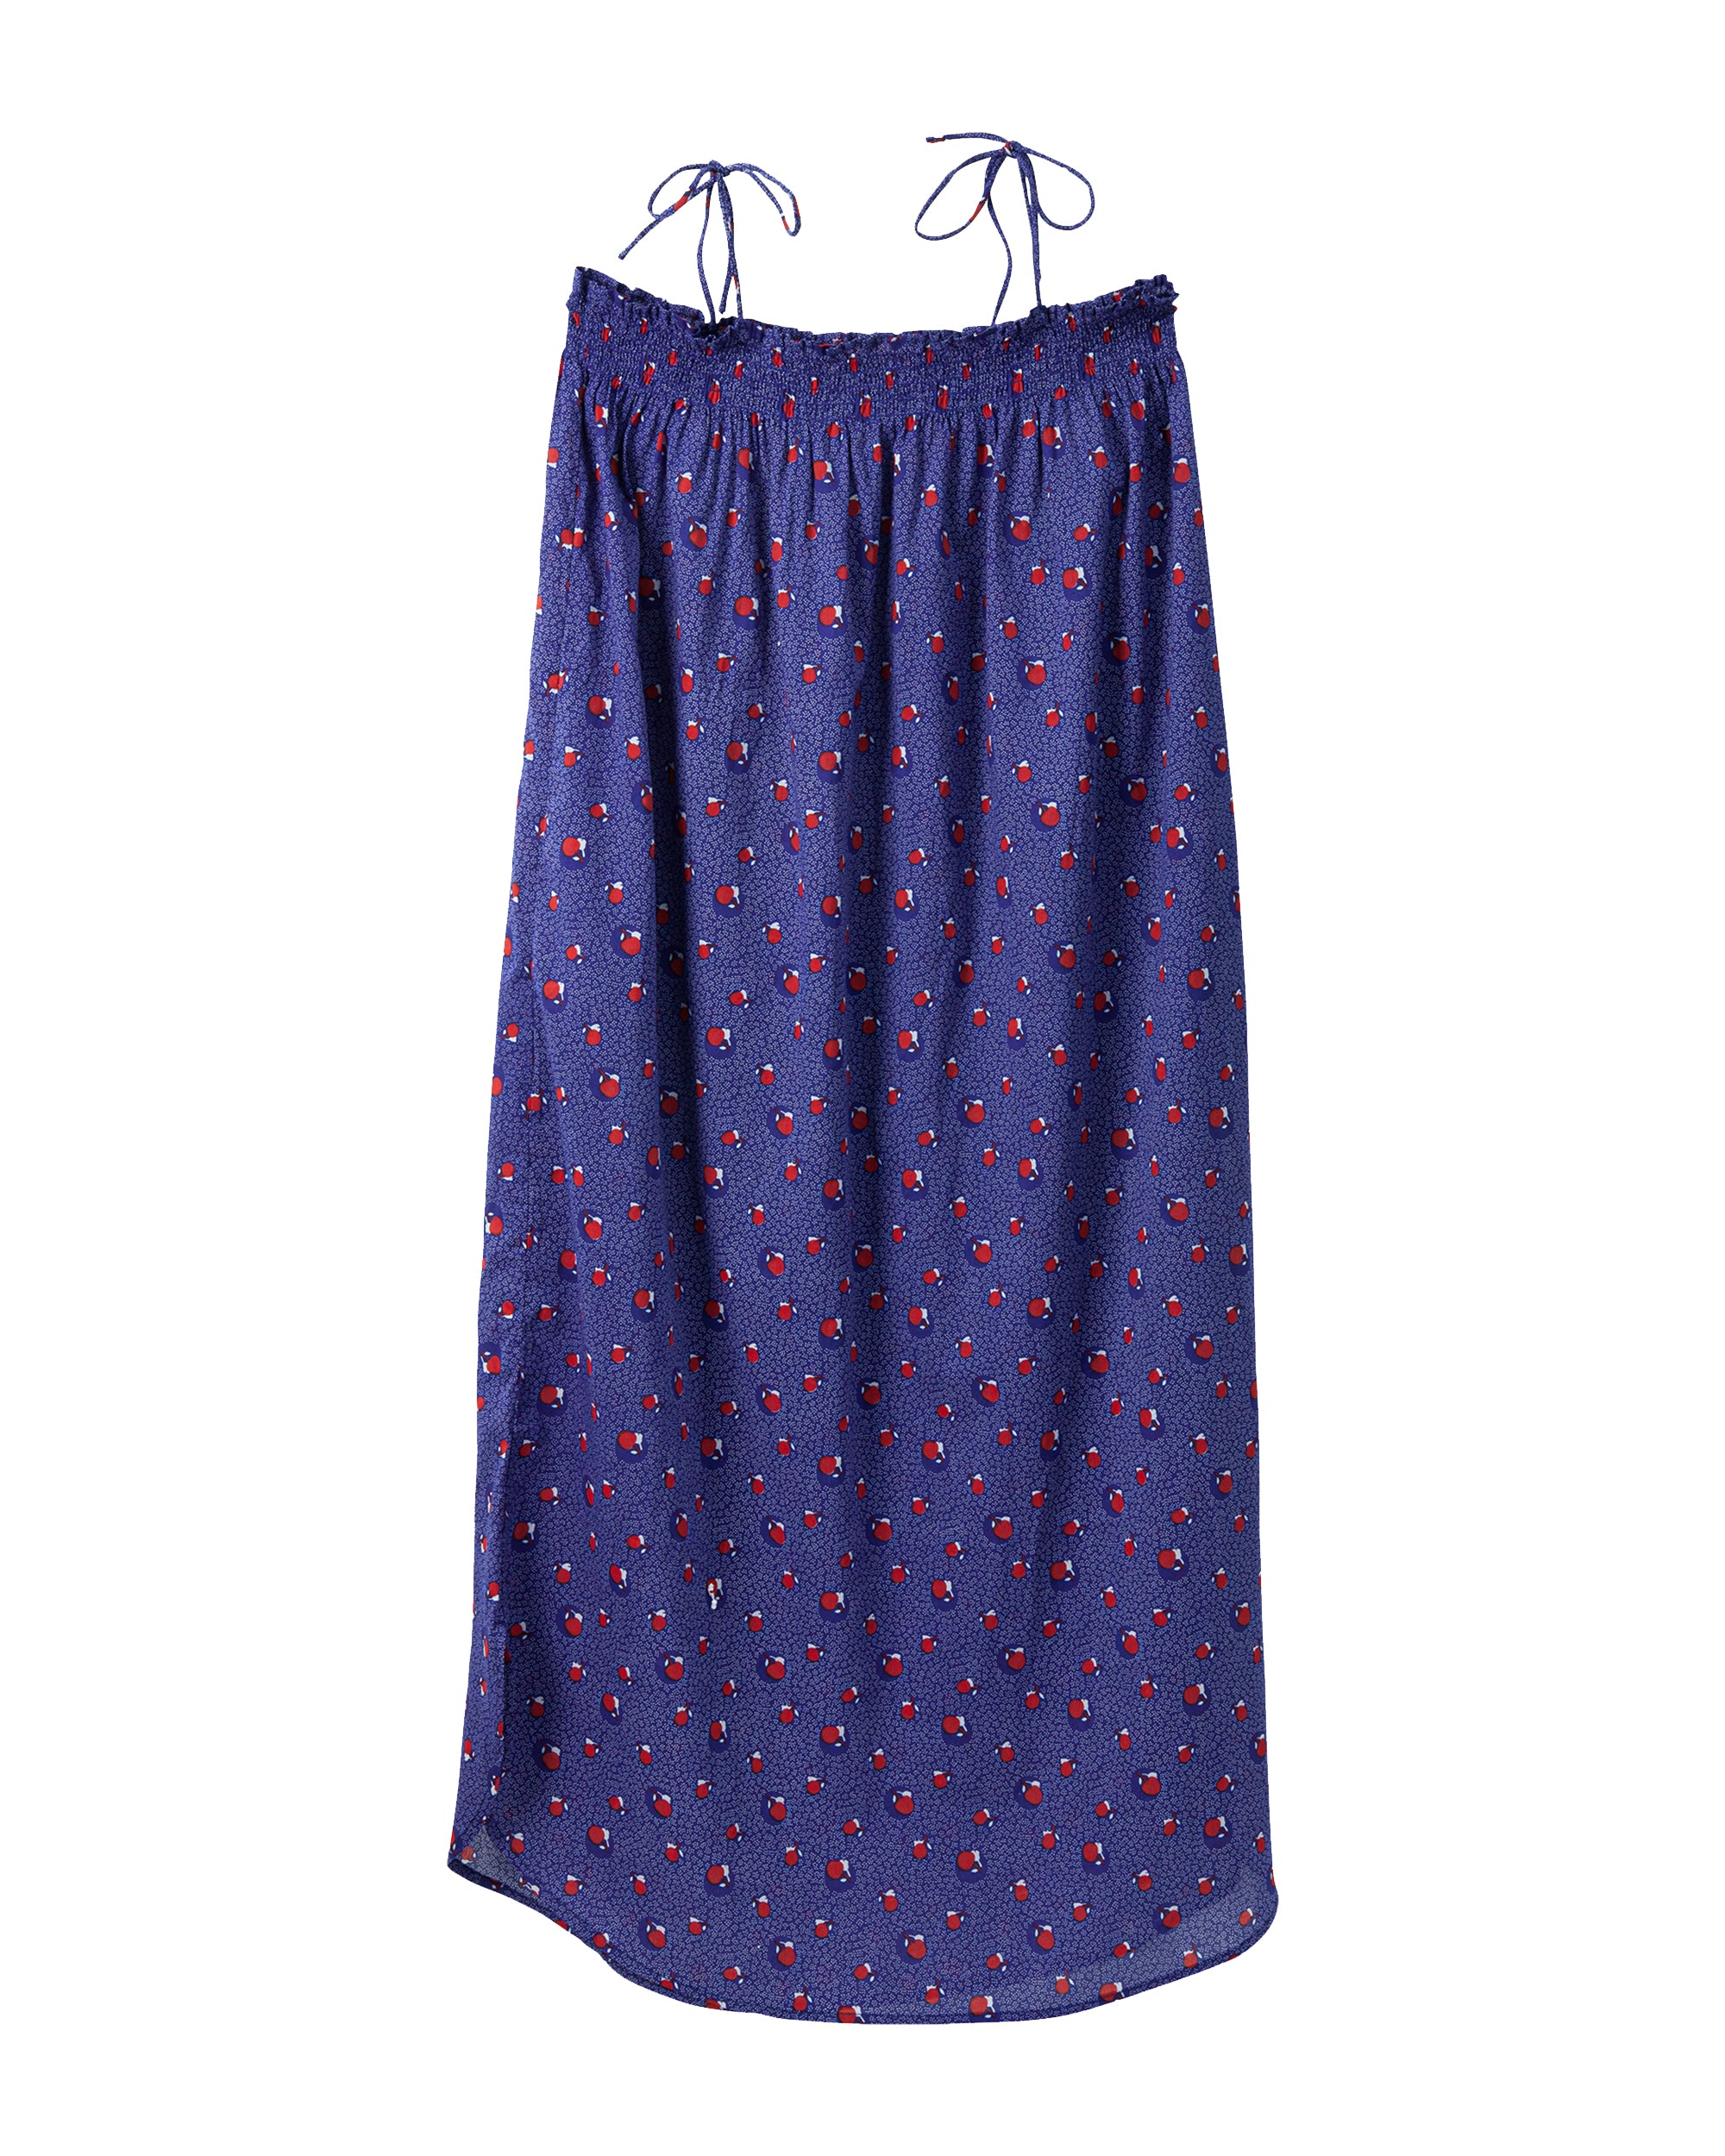 HABIBA SAKURA STRAP DRESS Dress JAPAN BLUE